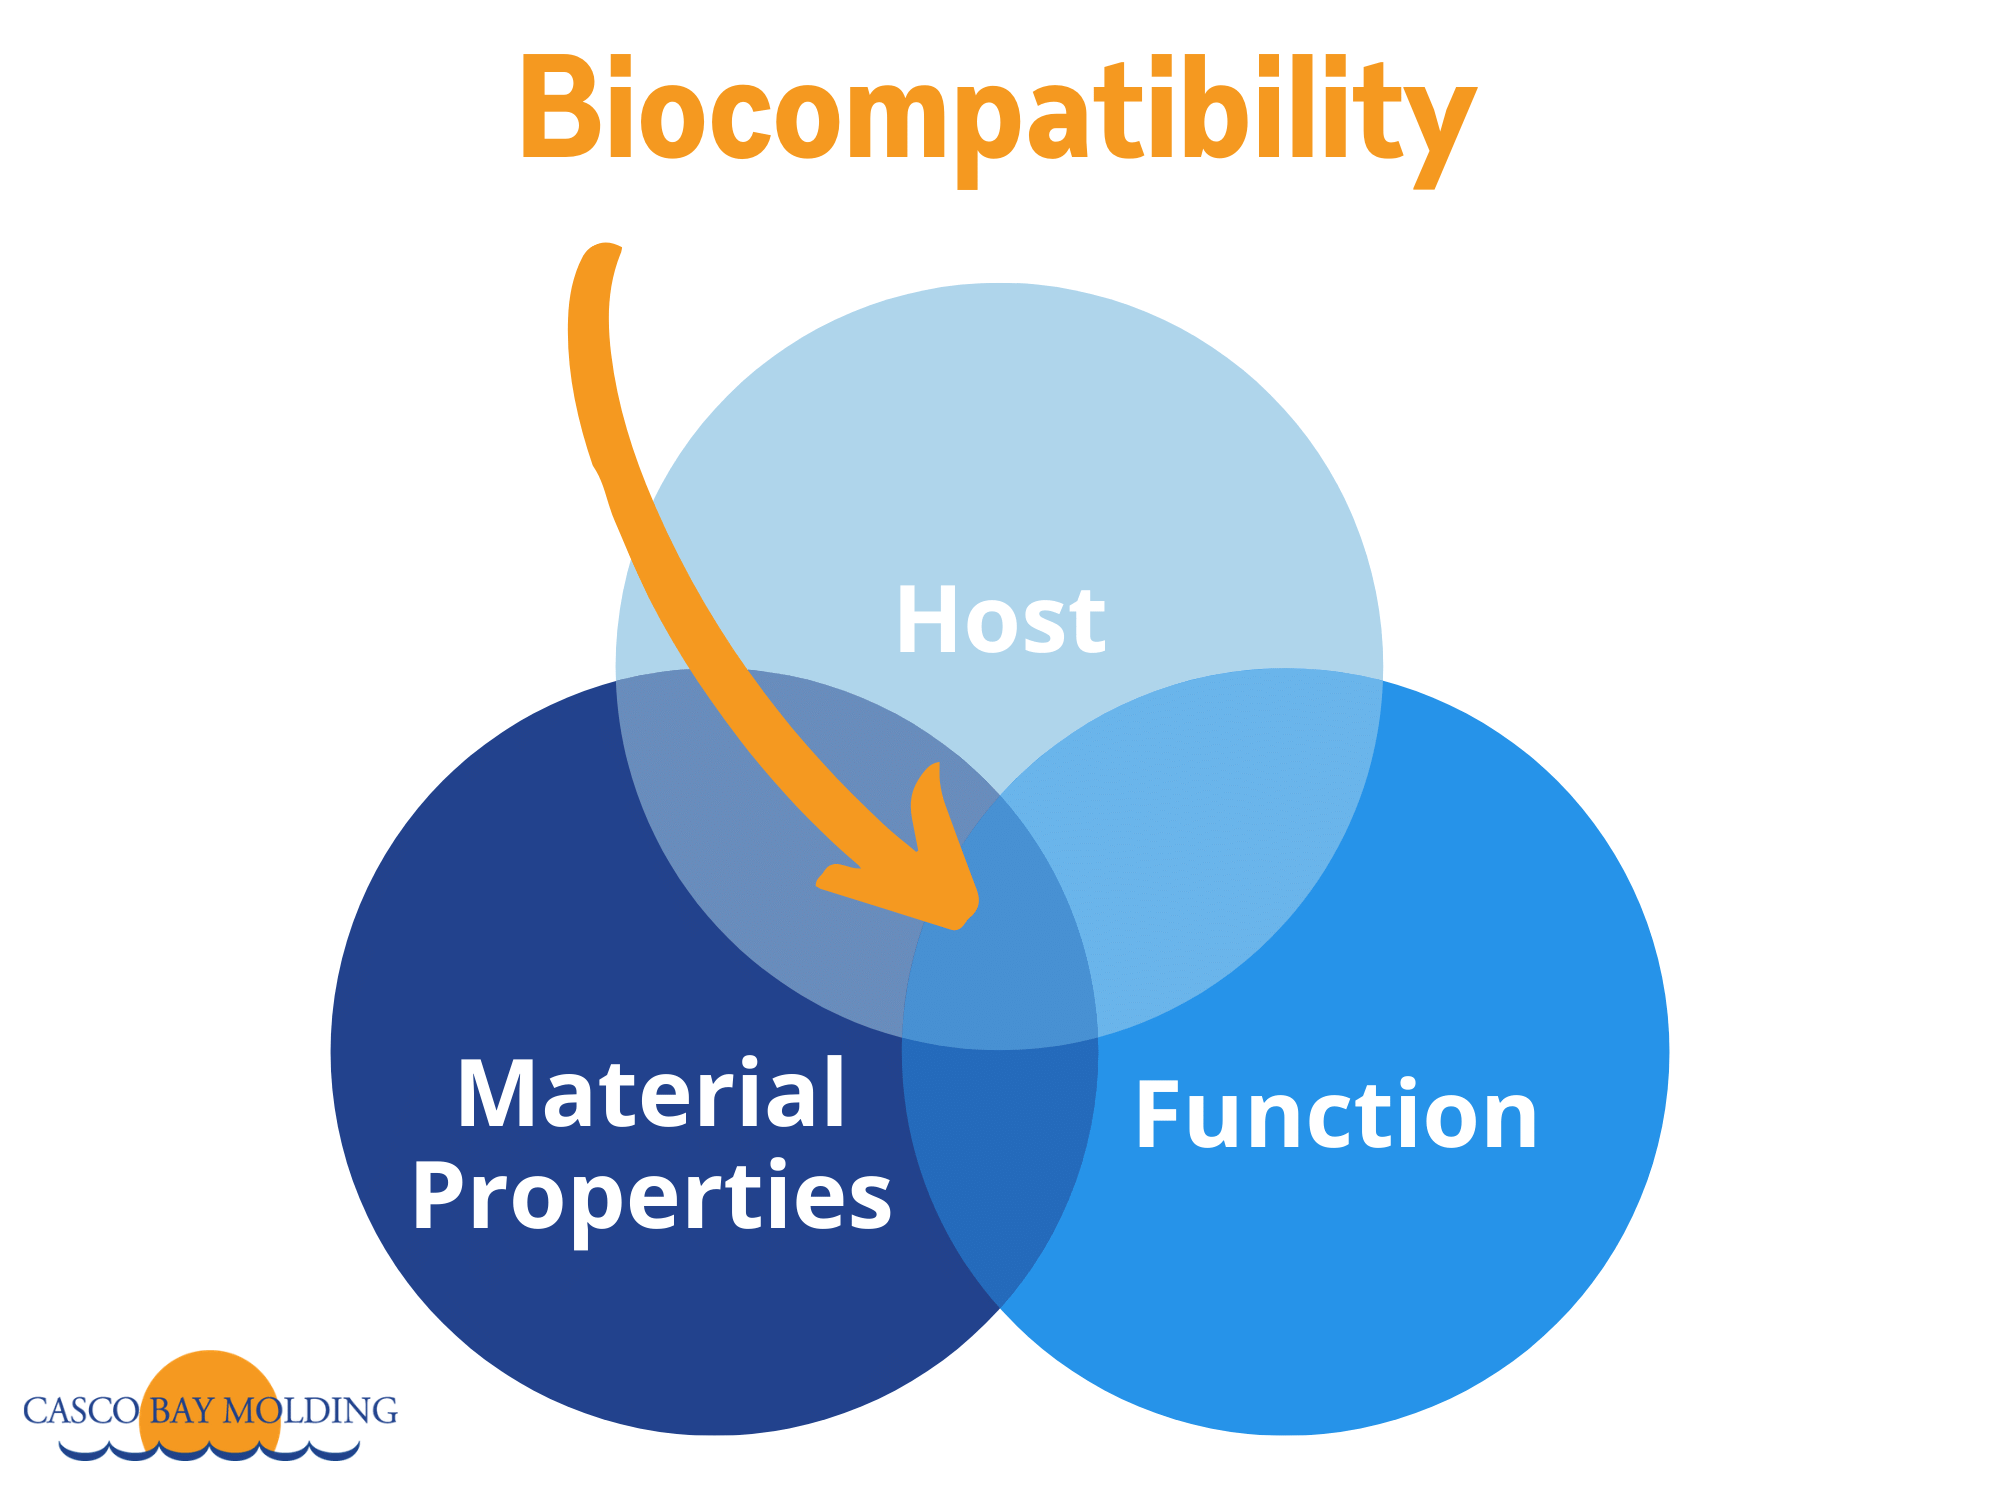 生物相容性有三个部分：材料属性，设备功能和主机内的位置。